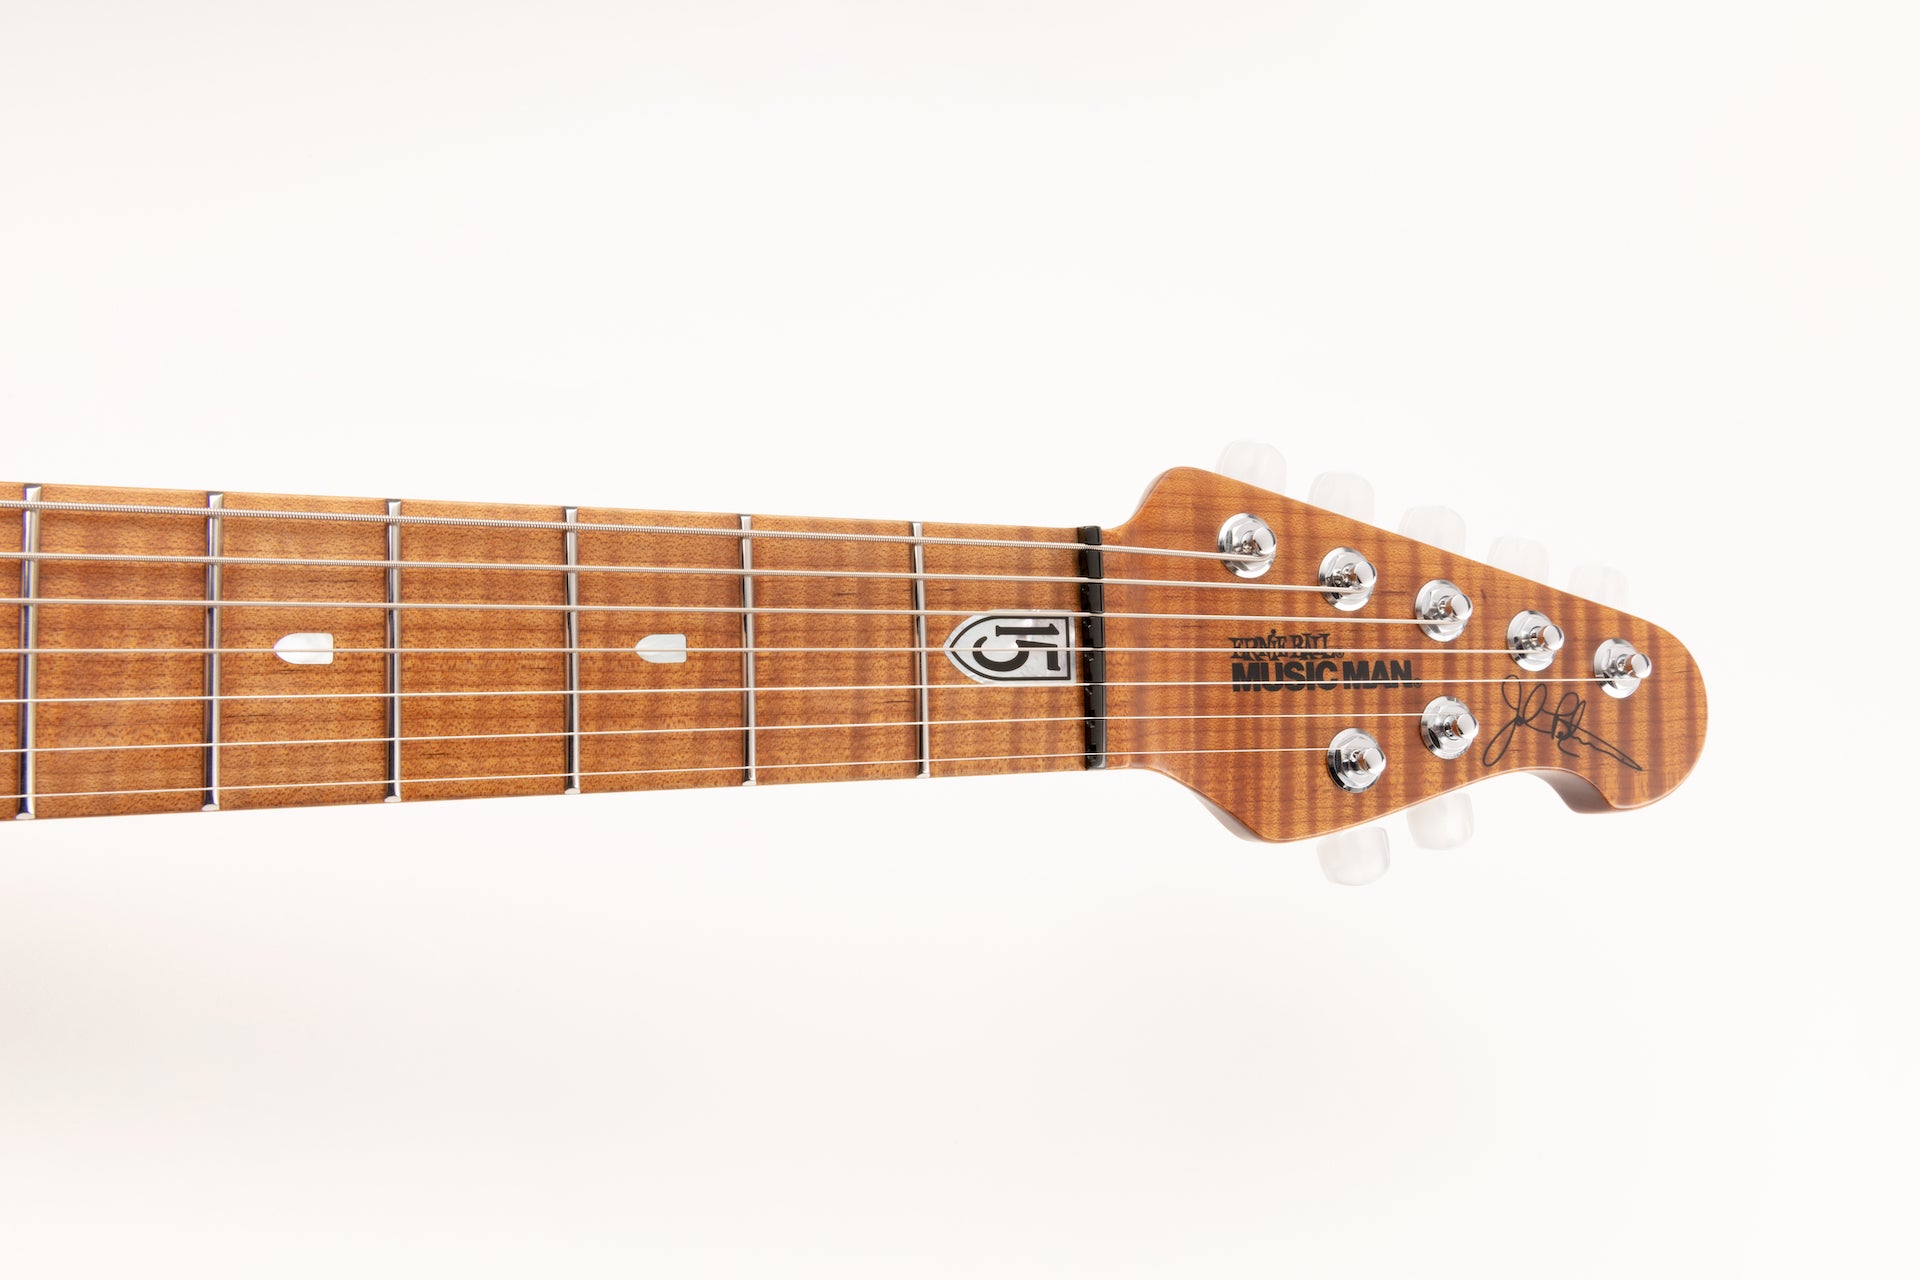 Ernie Ball Music Man JP15 7 Electric Guitar - Cerulean Paradise Quilt F94598 - HIENDGUITAR   Musicman GUITAR